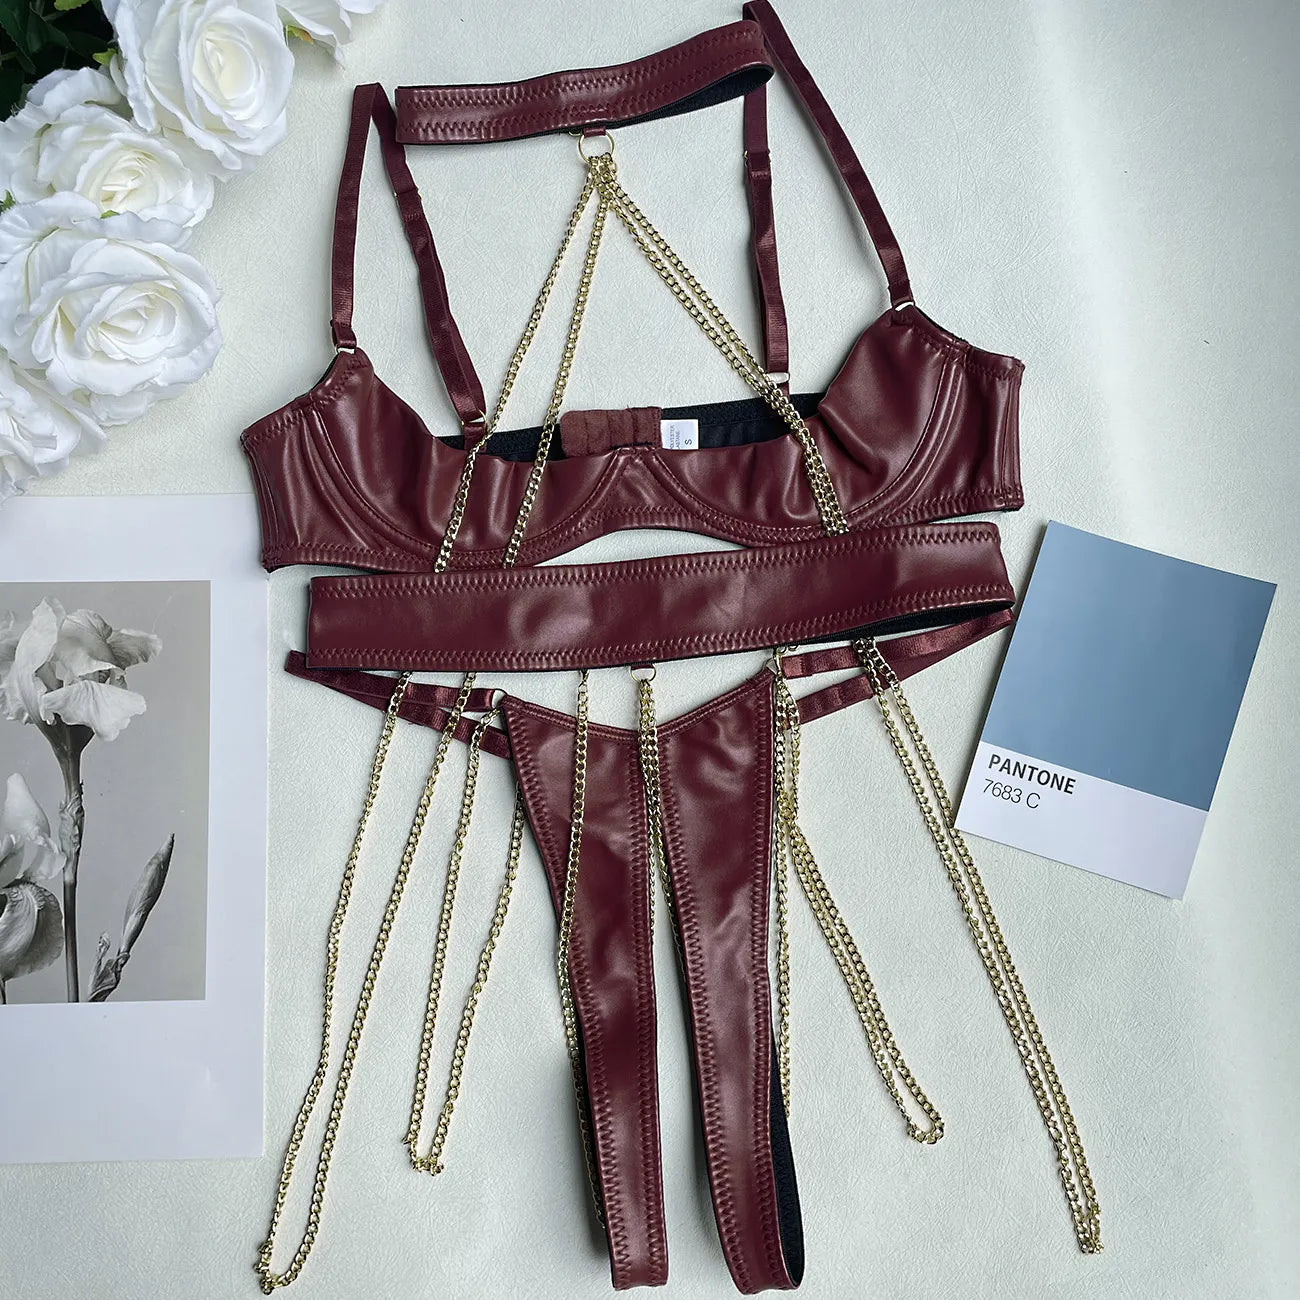 Kit de sujetador de media copa de lencería de cuero Sensual, Push Up con cadena, traje de Bilizna desnudo sin entrepierna, PU sin censura